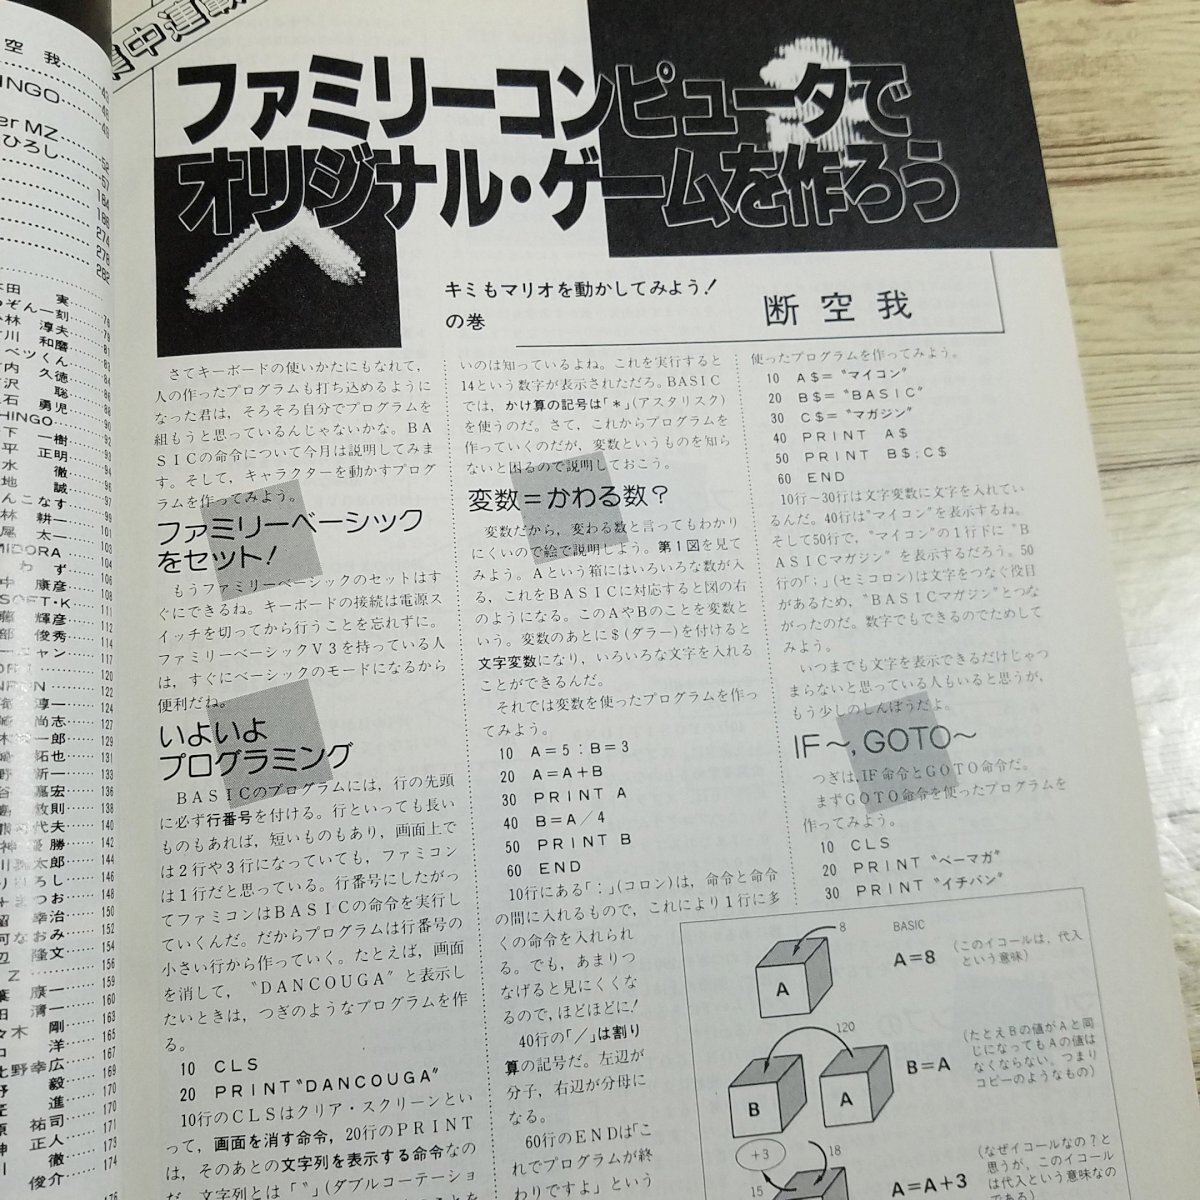 パソコン雑誌[マイコンBASICマガジン 1986年4月号] プログラムリスト55本 PCゲーム レトロPC レトロゲーム ファミコンでゲームを作ろう【送_画像8